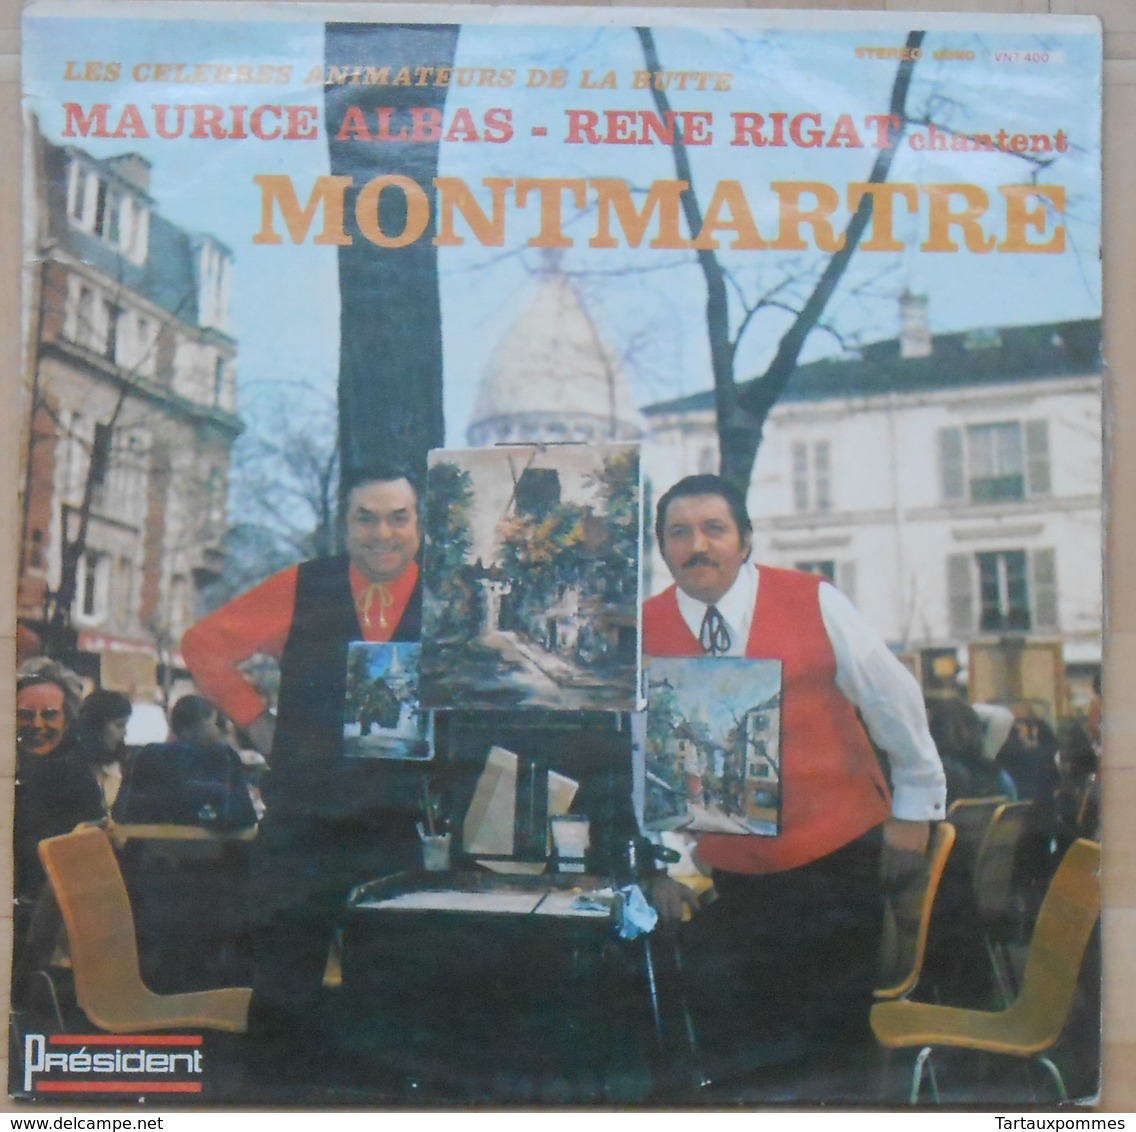 Les Célèbres Animateurs De La Butte Montmartre - Maurice Albas - René Rigat - 33T Dédicacé Par R. Rigat - Humor, Cabaret